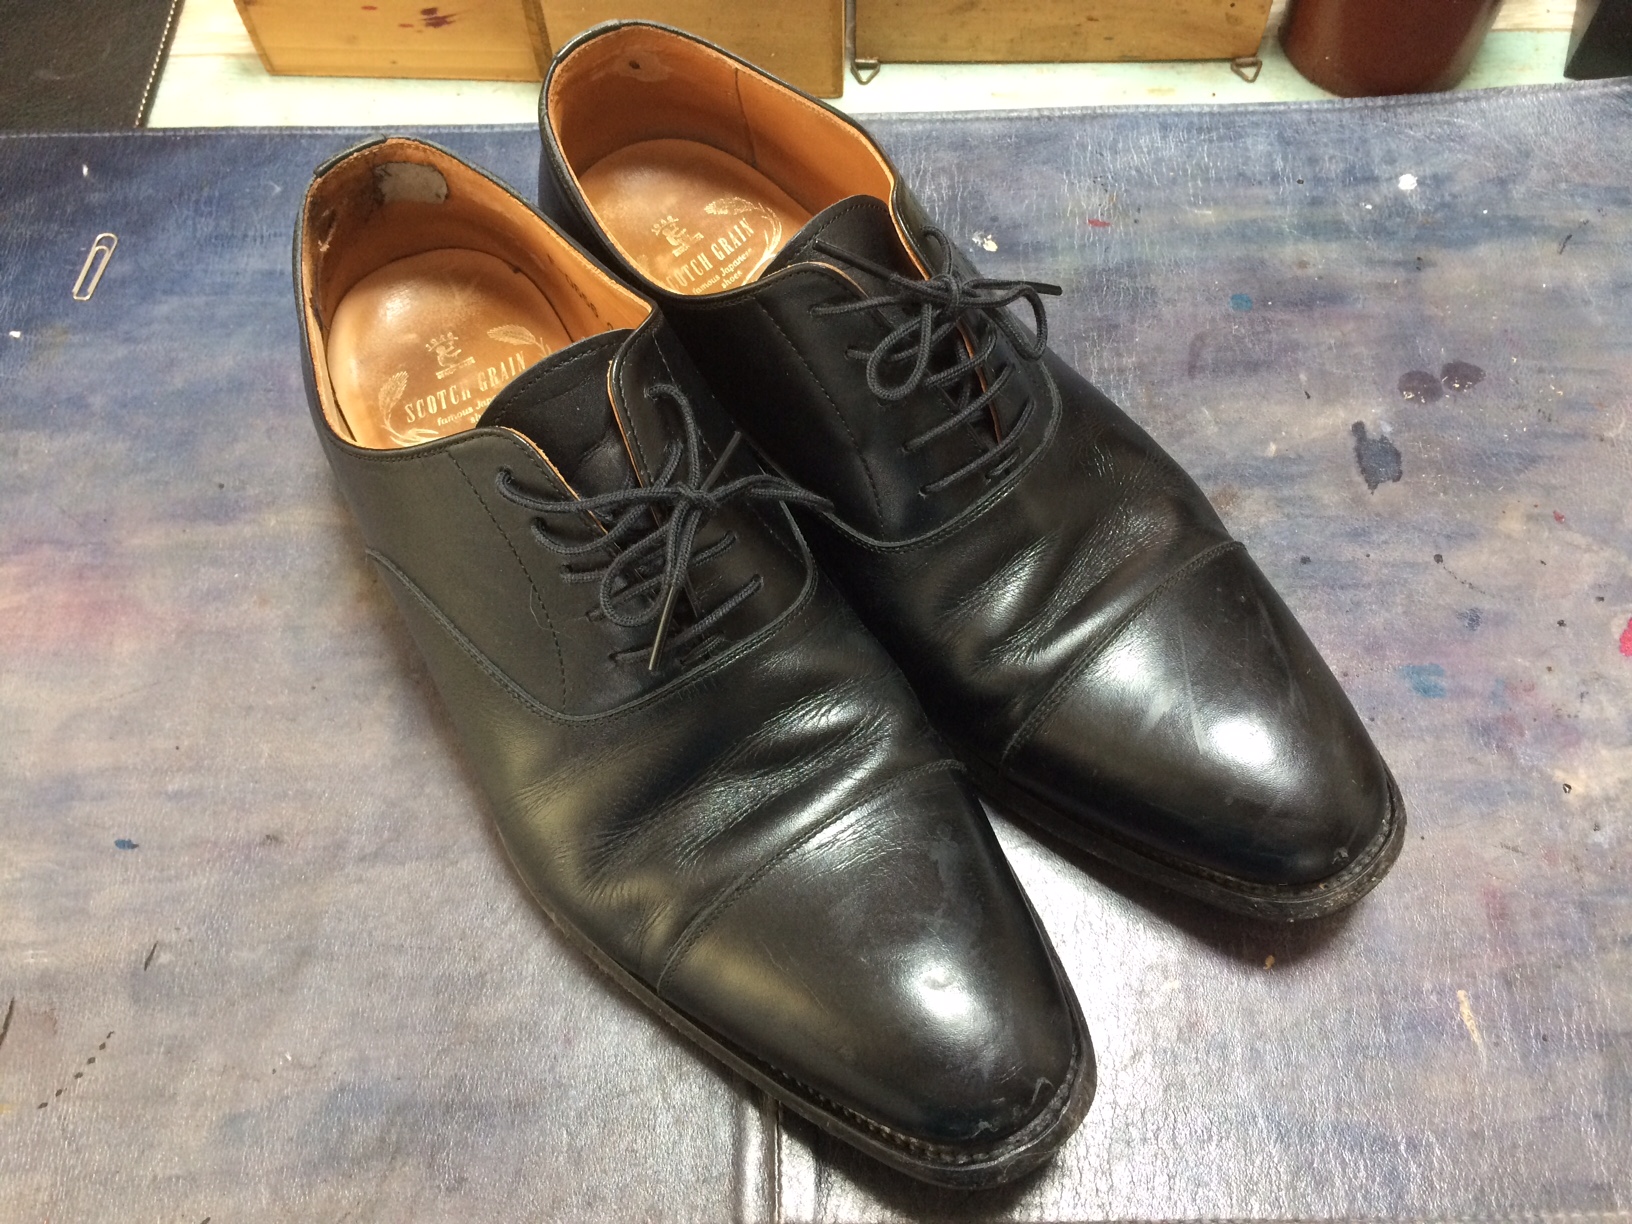 スコッチグレイン 靴修理 靴磨き すべり革修理 | 靴磨き 靴修理 